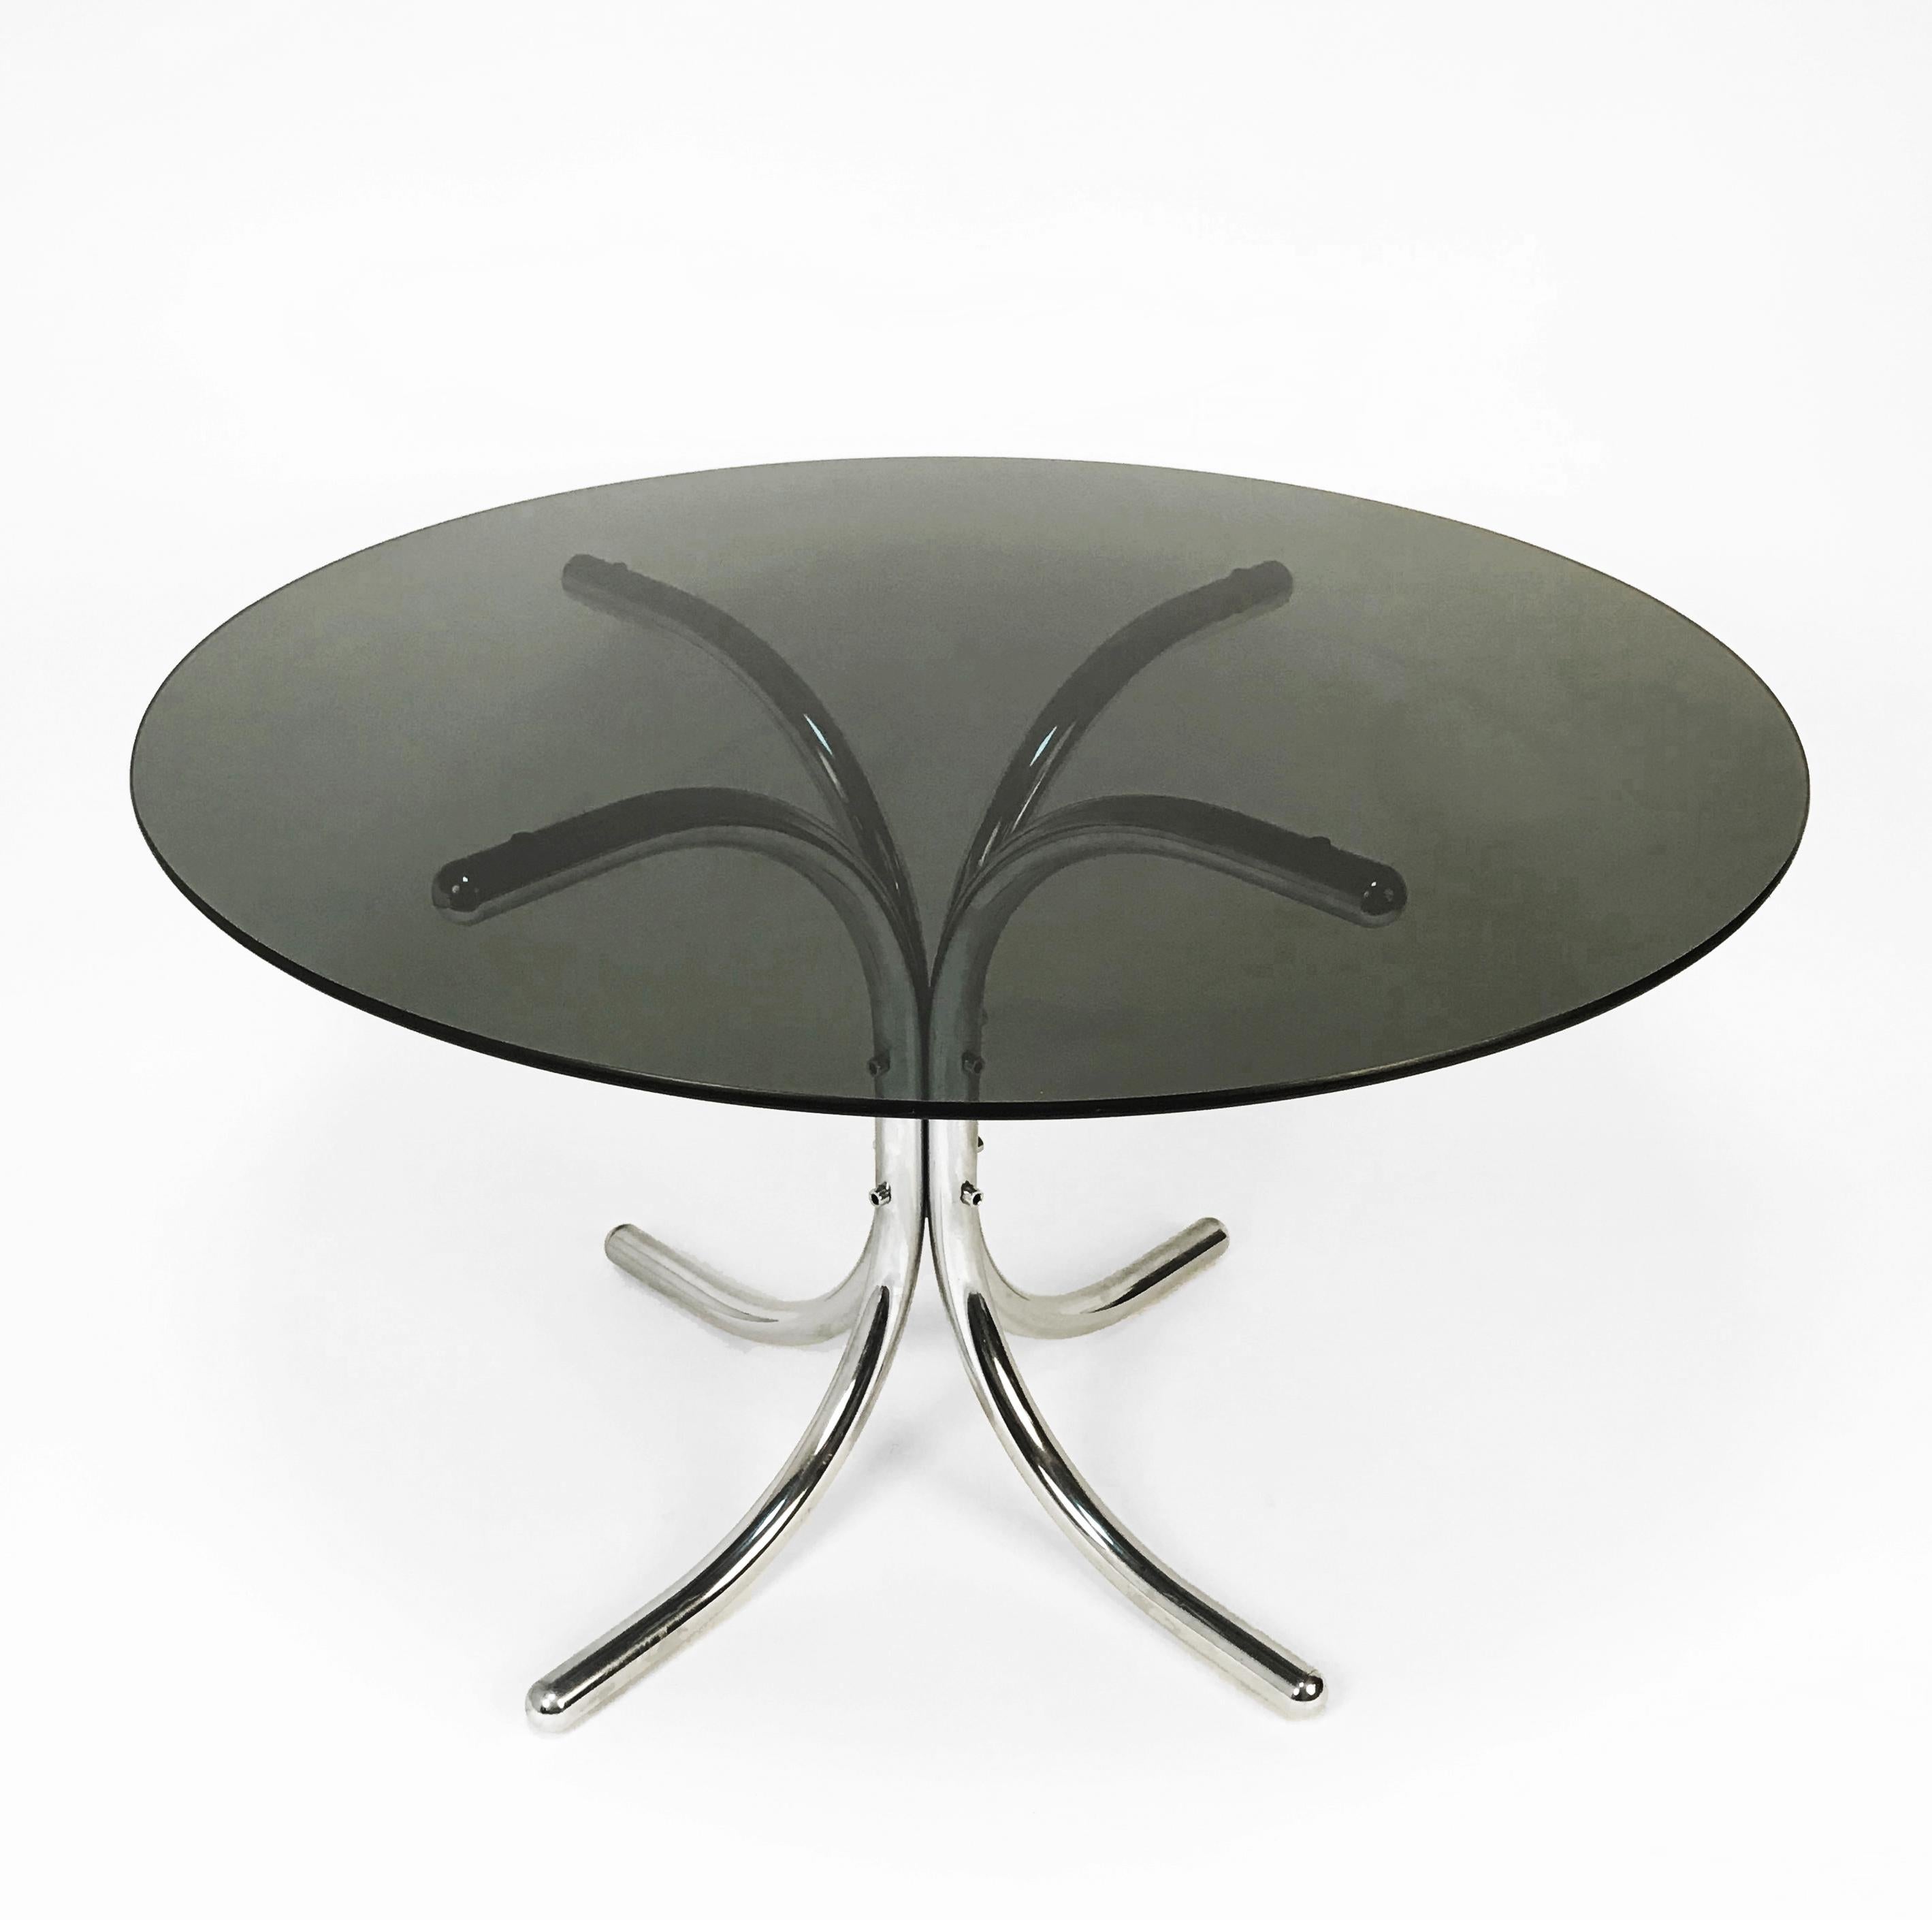 Table de salle à manger italienne, style Giotto Stoppino. Base en métal chromé, plateau en verre fumé. Dimensions : Diamètre : 120 cm.